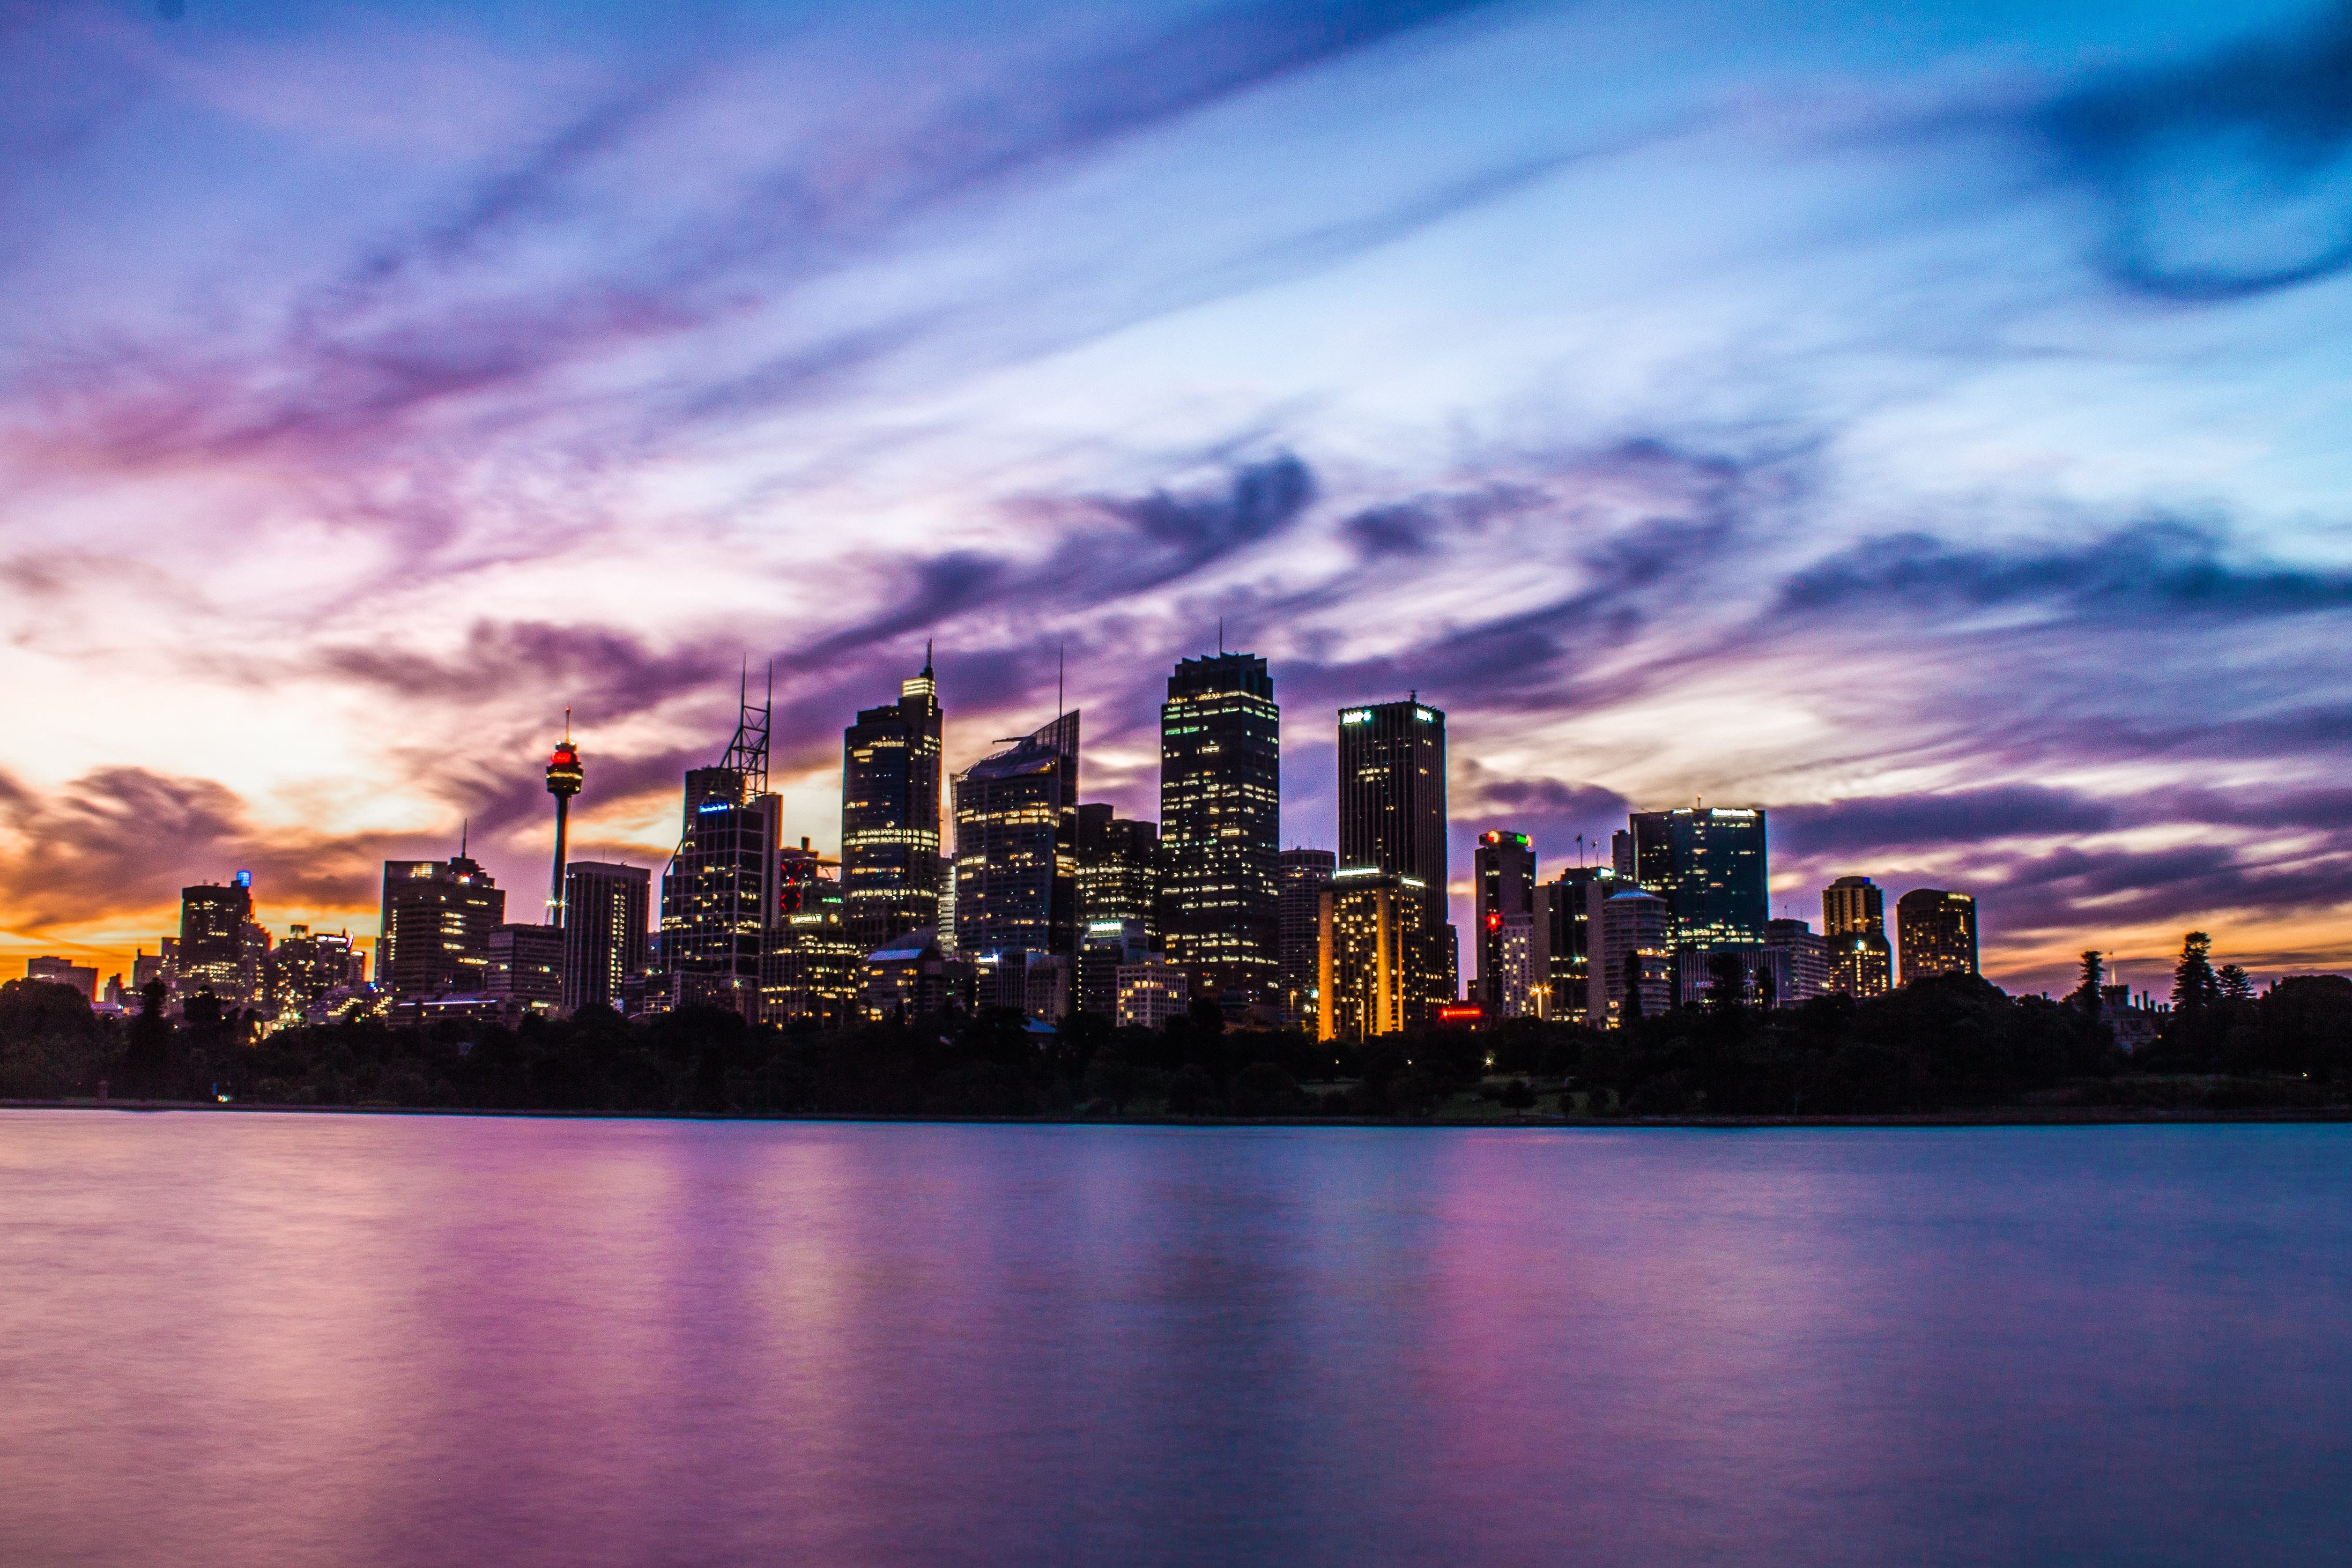 Landscape of Sydney City Skyline at Dusk